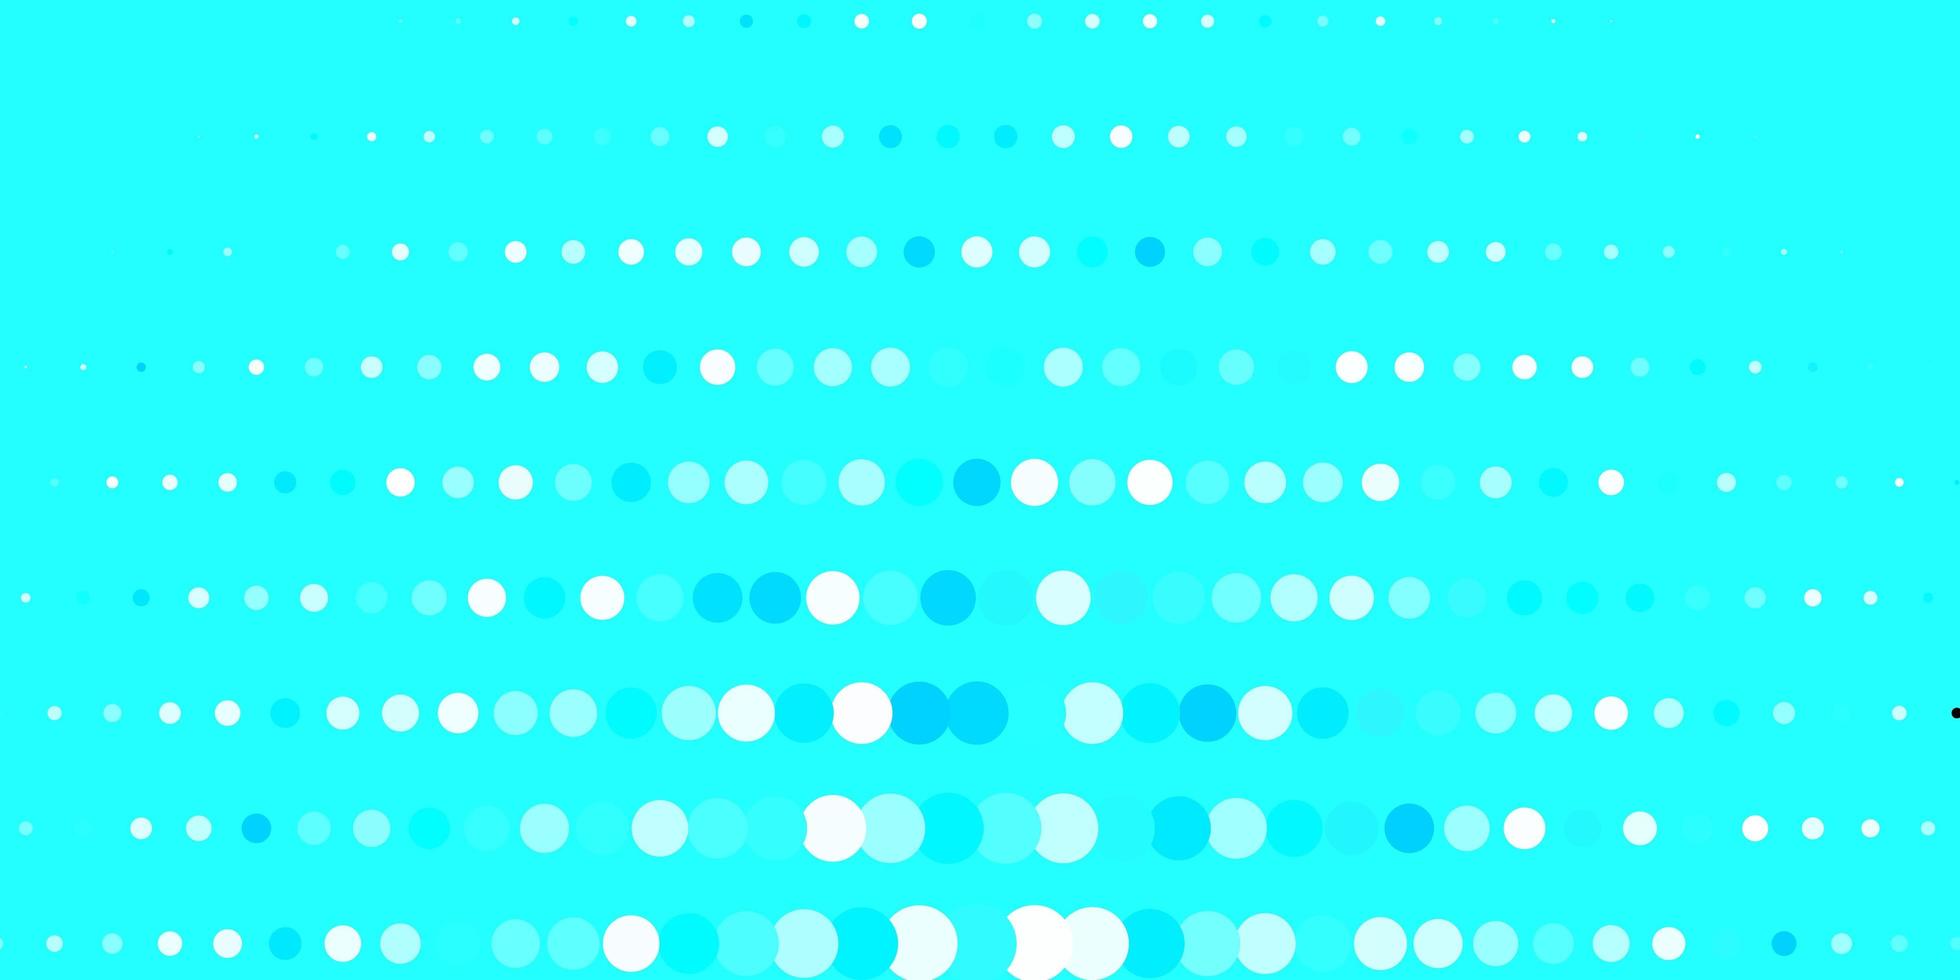 texture vecteur bleu foncé avec des disques. illustration colorée avec des points dégradés dans un style nature. nouveau modèle pour un livre de marque.